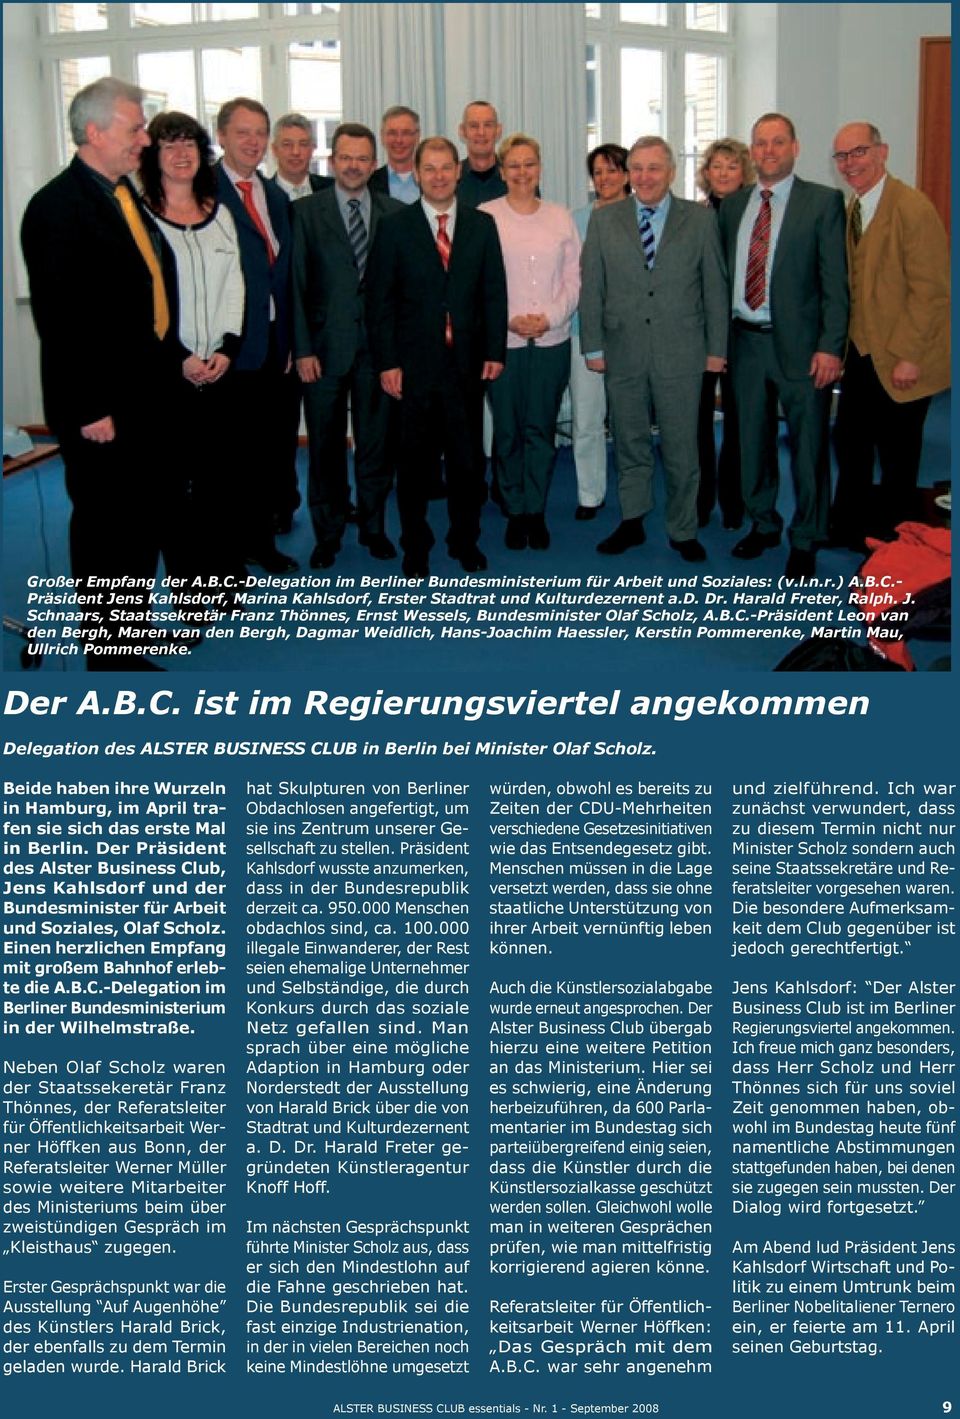 -Präsident Leon van den Bergh, Maren van den Bergh, Dagmar Weidlich, Hans-Joachim Haessler, Kerstin Pommerenke, Martin Mau, Ullrich Pommerenke. Der A.B.C.